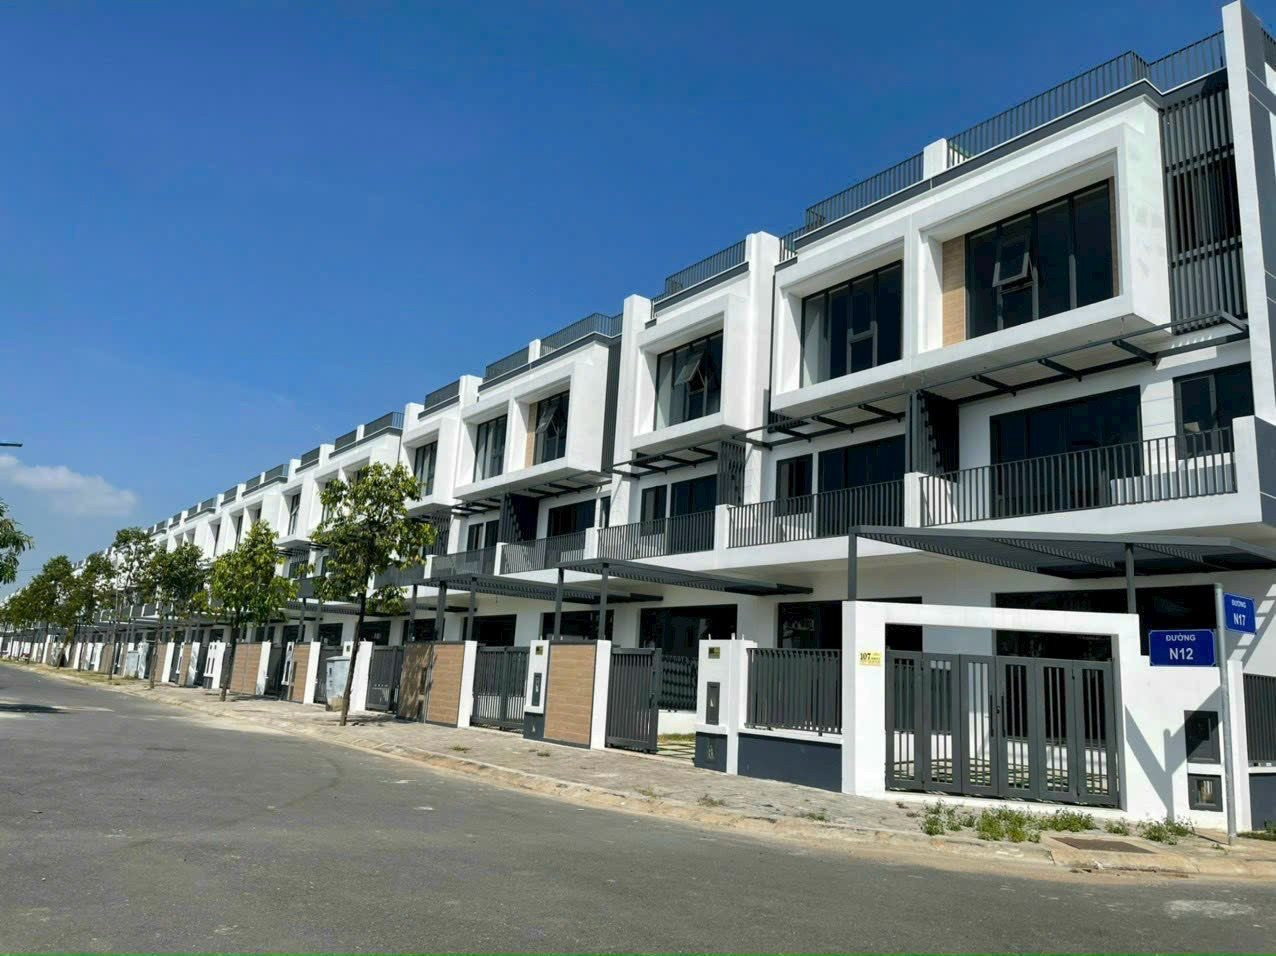 Phát hiện một khu ven của Tp.HCM có giá sơ cấp nhà phố biệt thự bán ra chạm mốc hơn 62 tỉ đồng/căn - Ảnh 3.